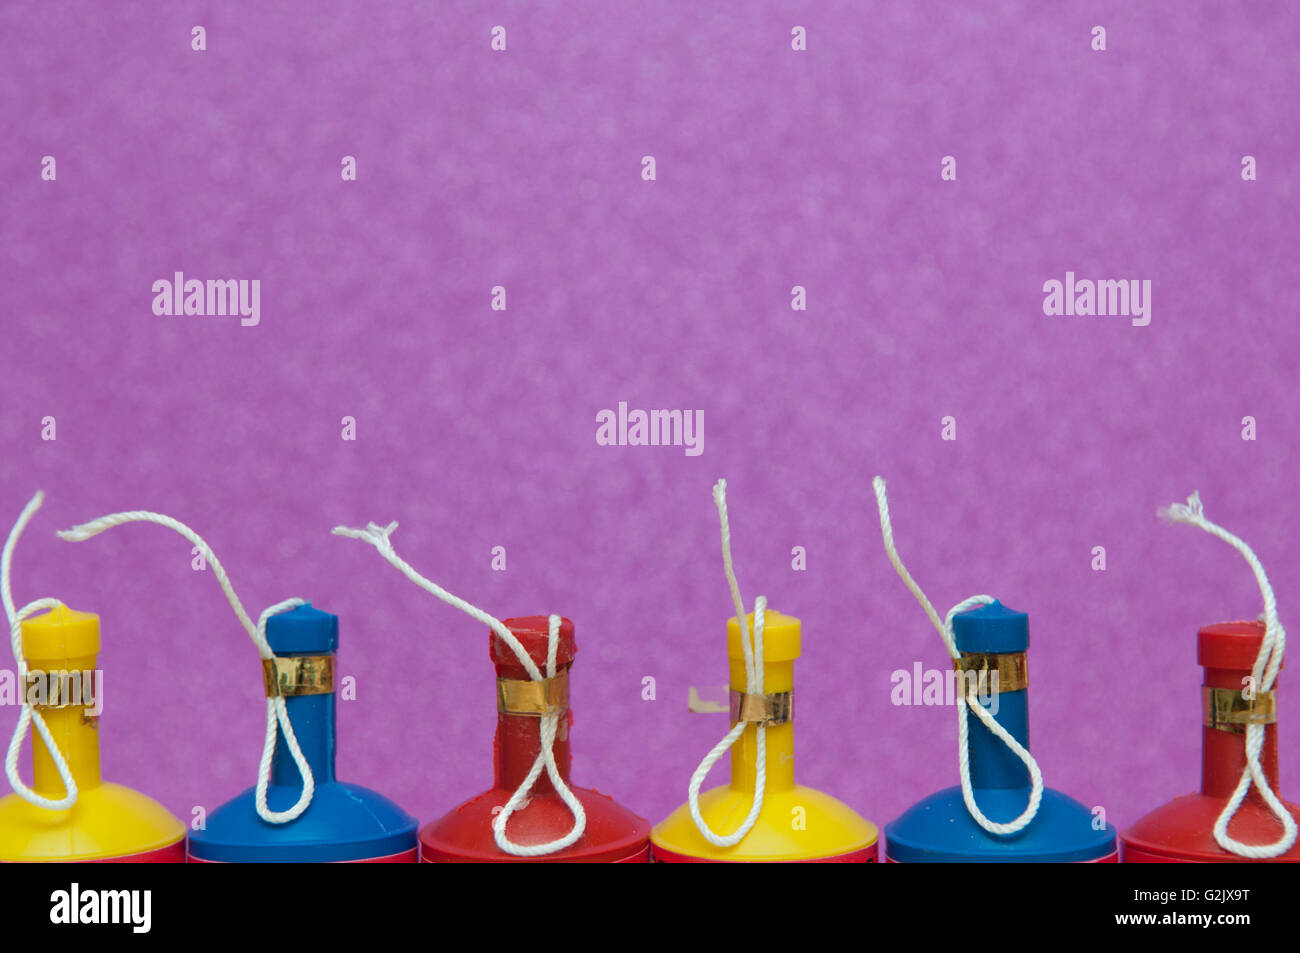 Bunte Party Poppers in einer Reihe auf einem hellen Hintergrund angeordnet Stockfoto